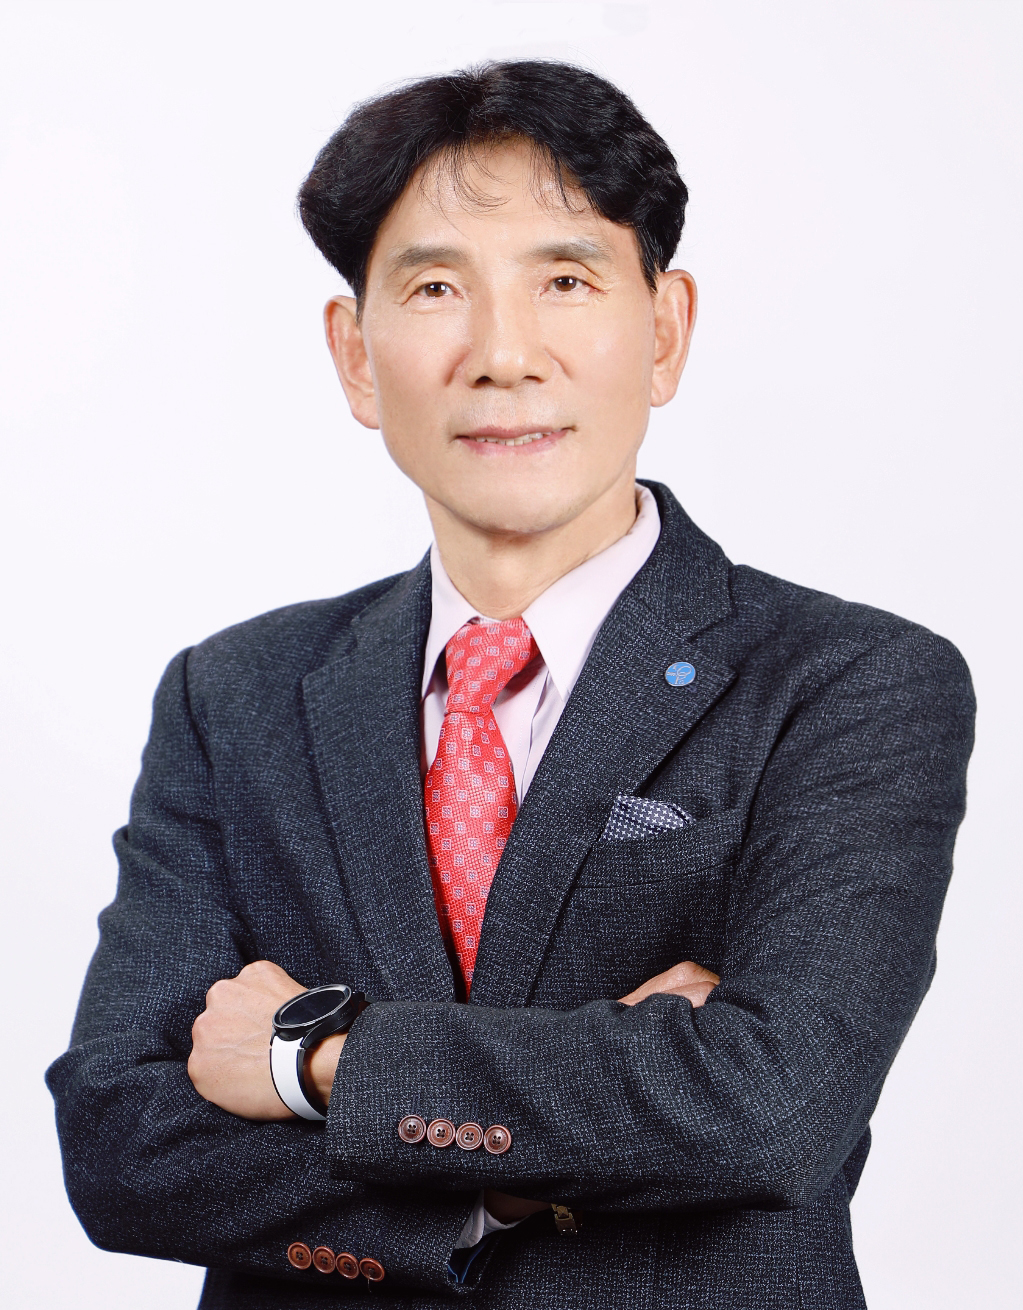 조선형 교수 사진